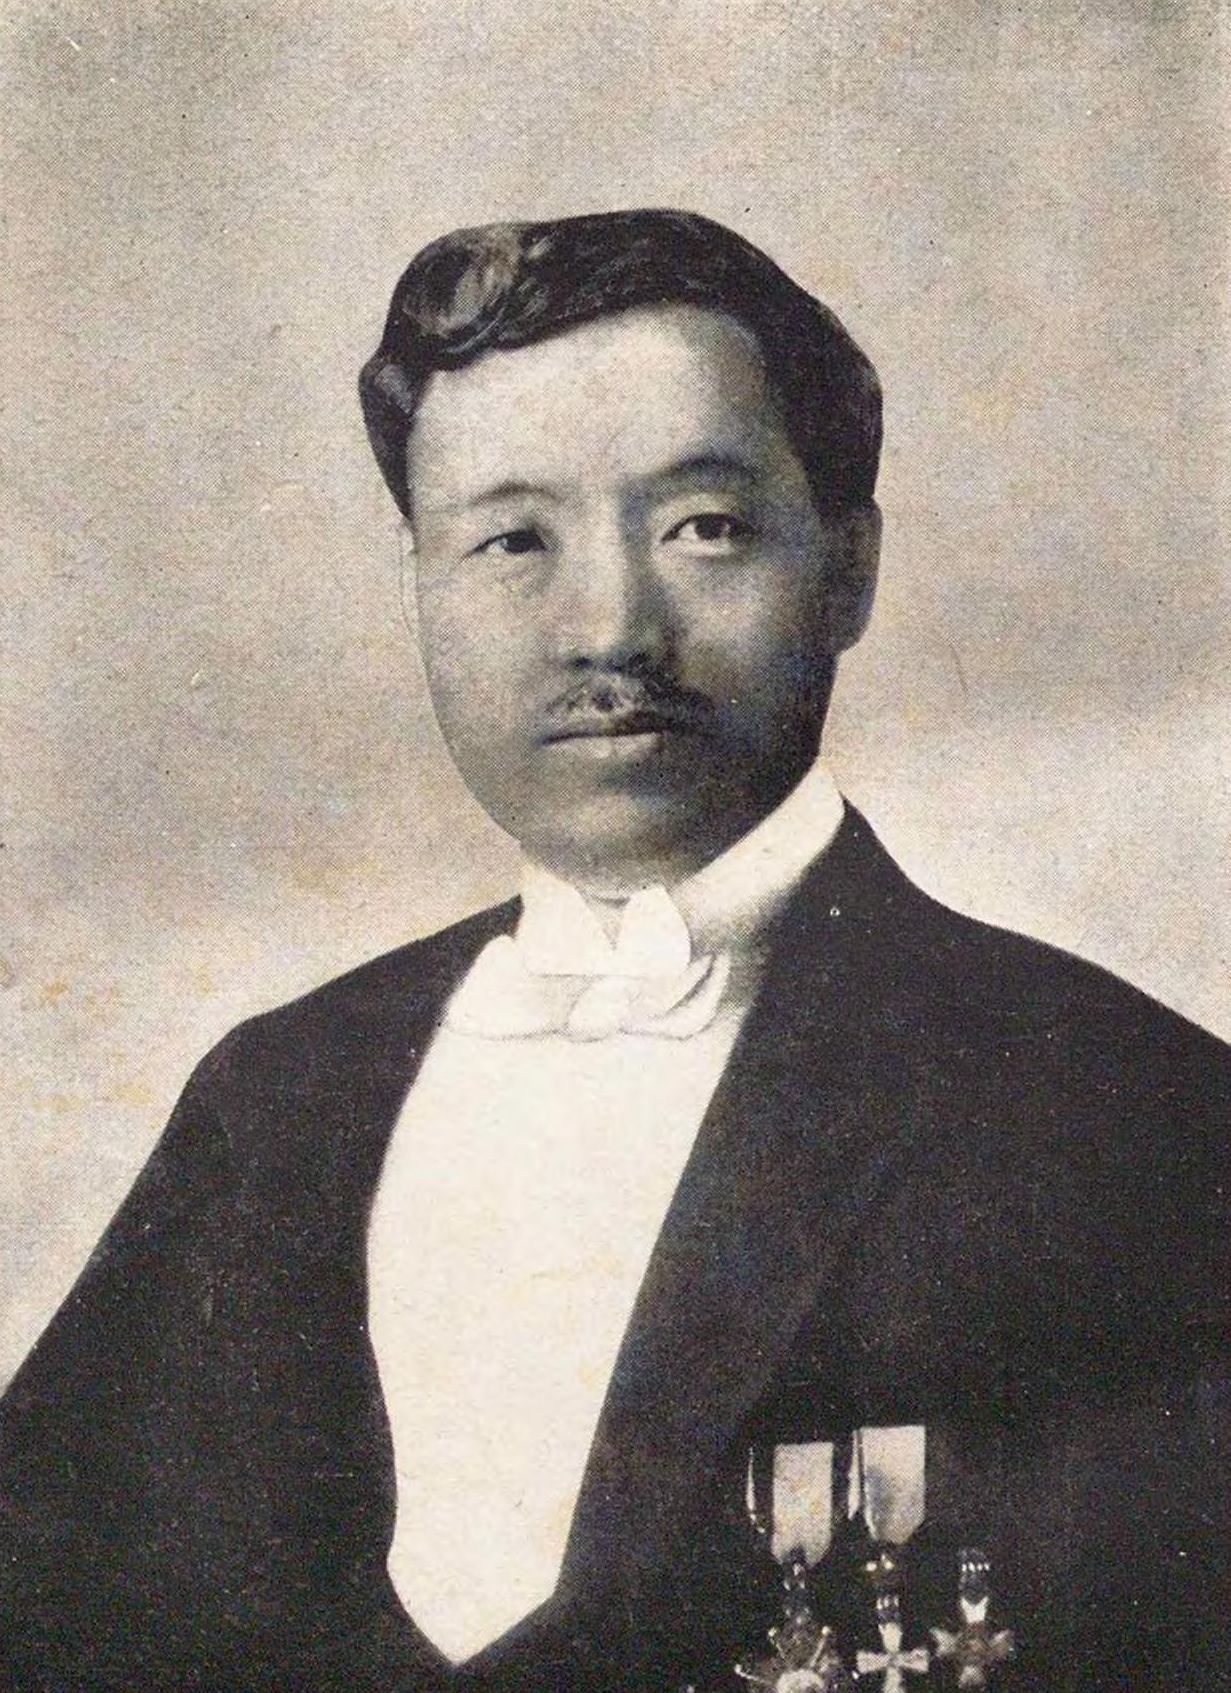 Portrait of NOGUCHI Hideyo6